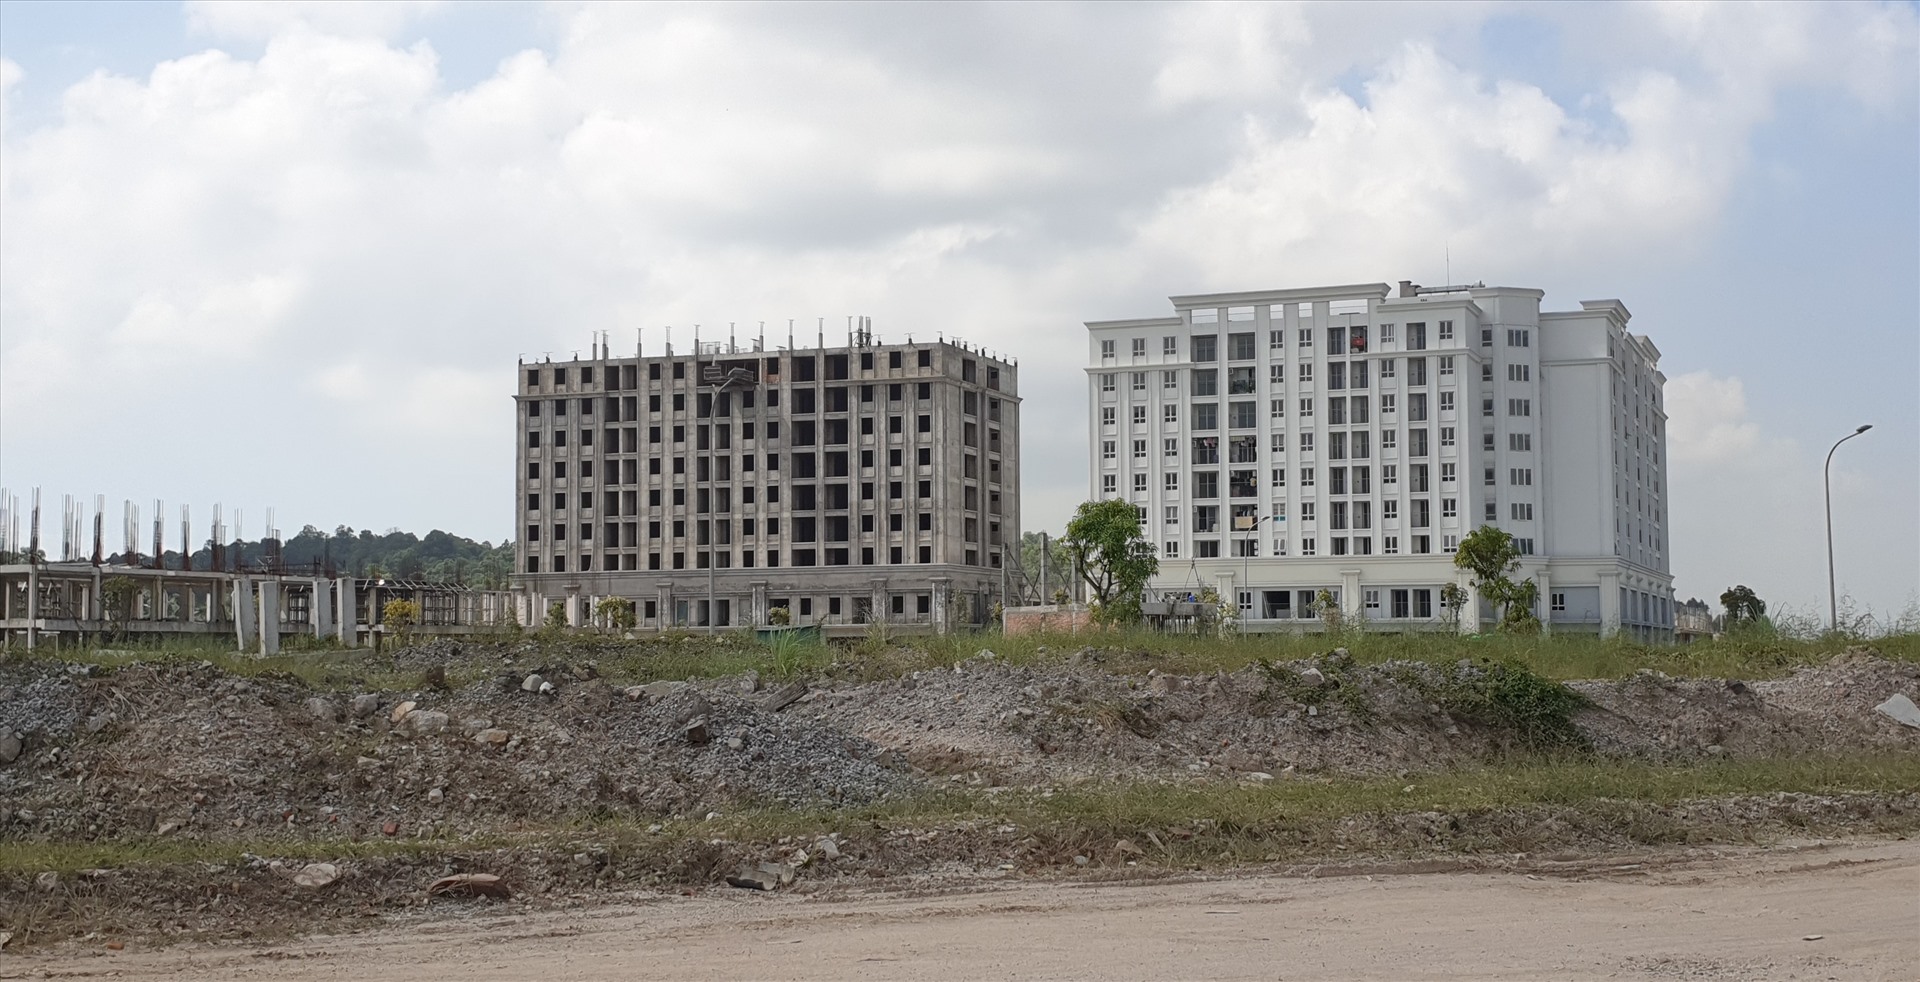 Khu chung cư của Dự án Khu đô thị Tropical City Hạ Long tại phường Hà Khánh, Hạ Long. Ảnh: Nguyễn Hùng